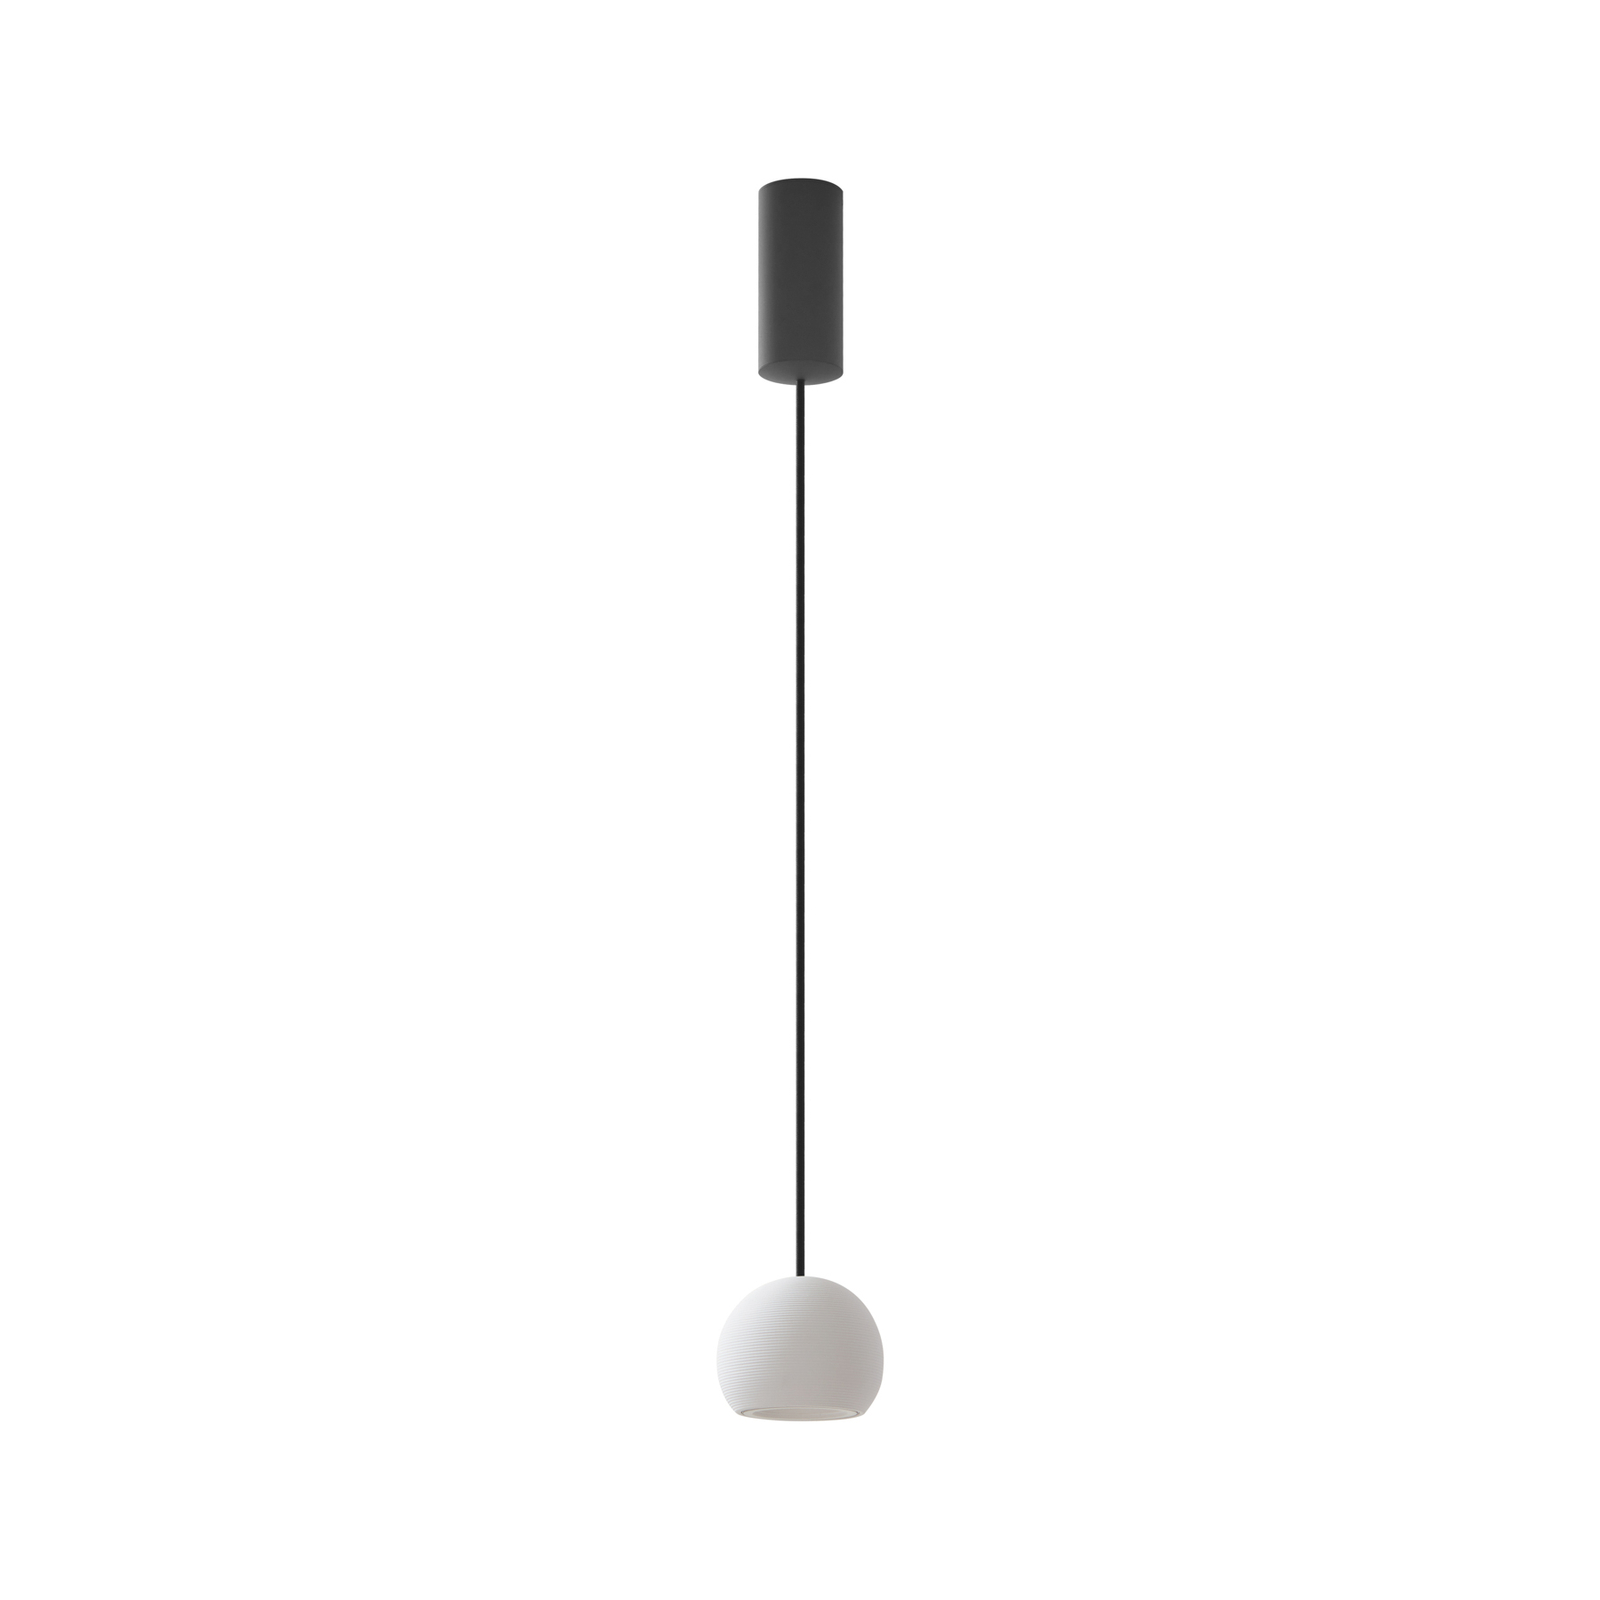 Lucande LED pendant light Darkorin, white, round, plaster, Ø 12 cm